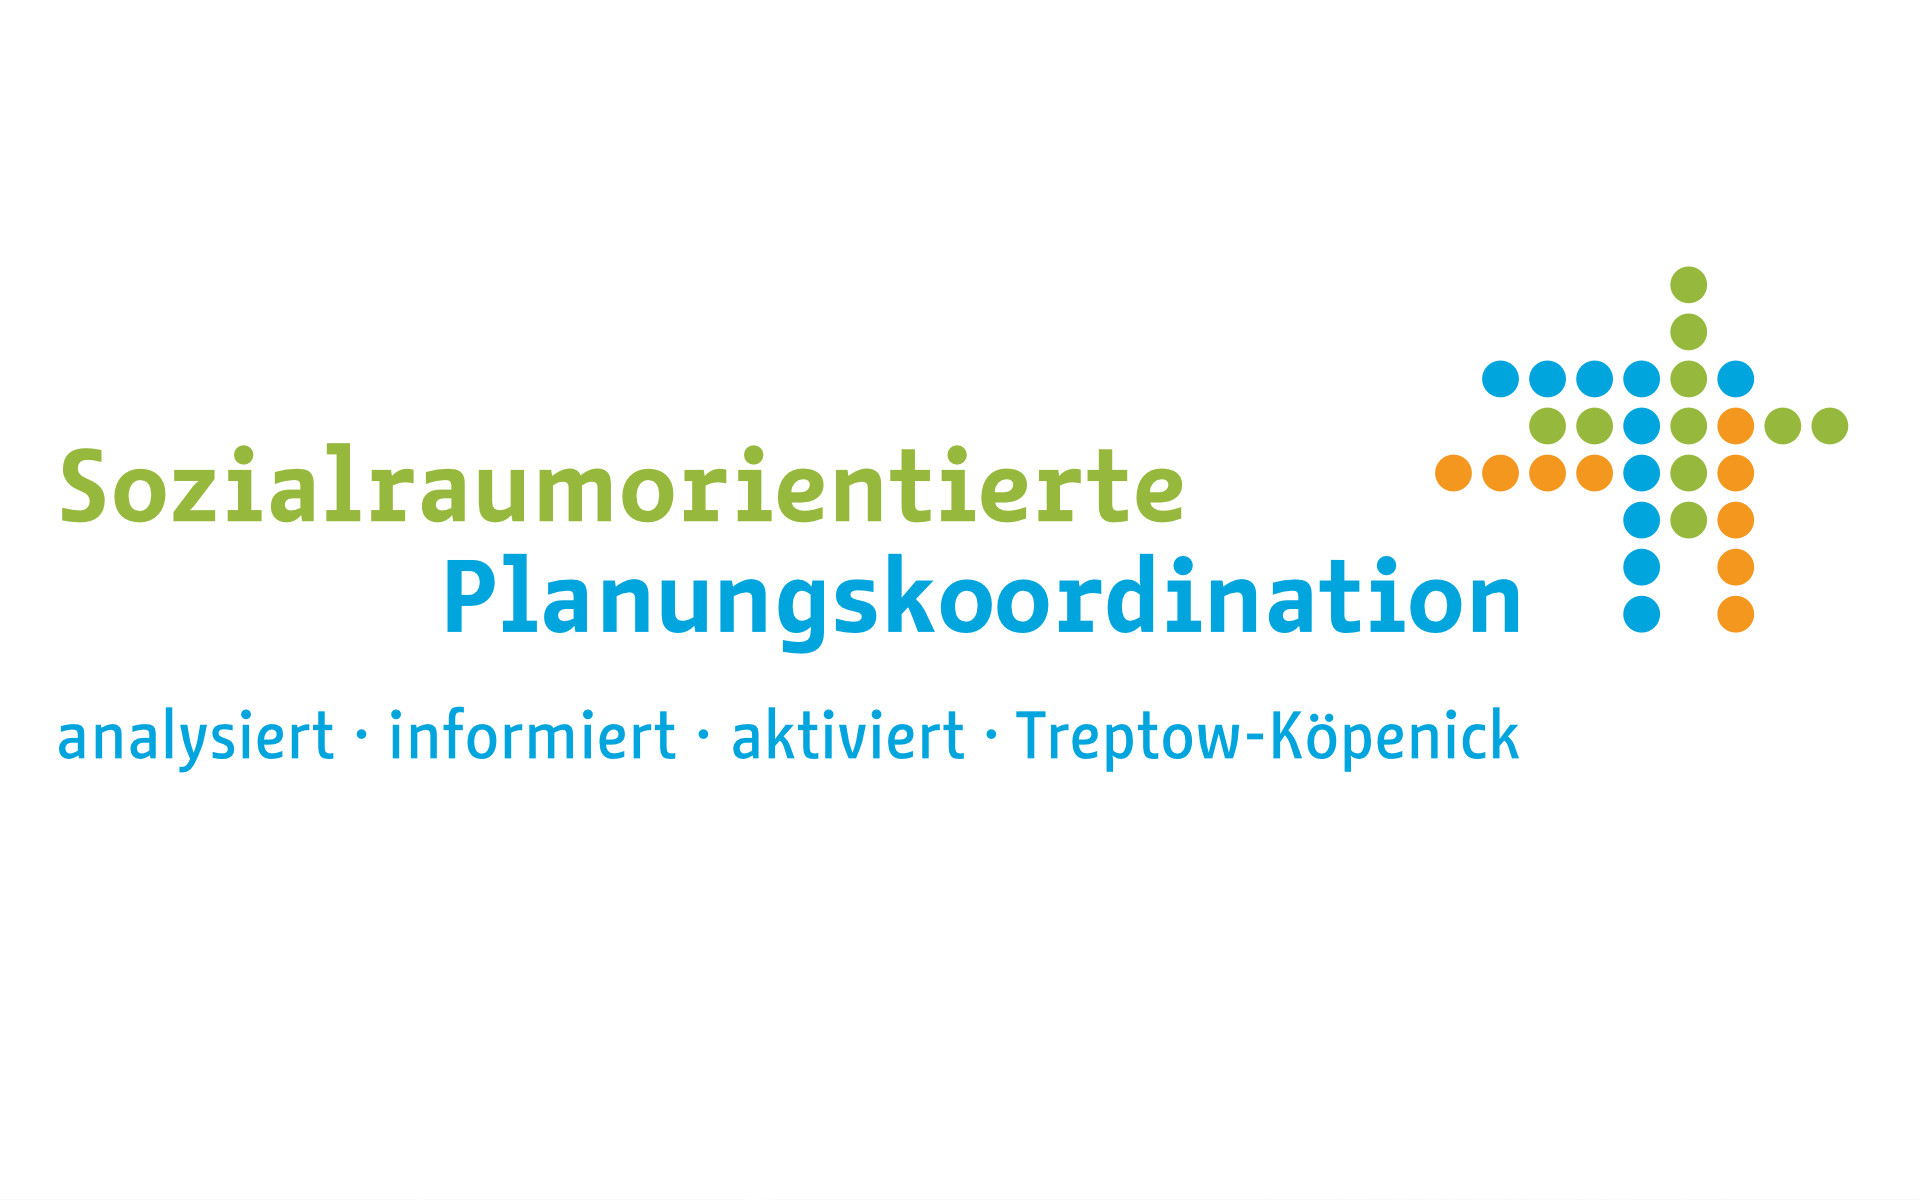 Sozialraumorientierte Planungskoordination Logo Signet Grafik Design